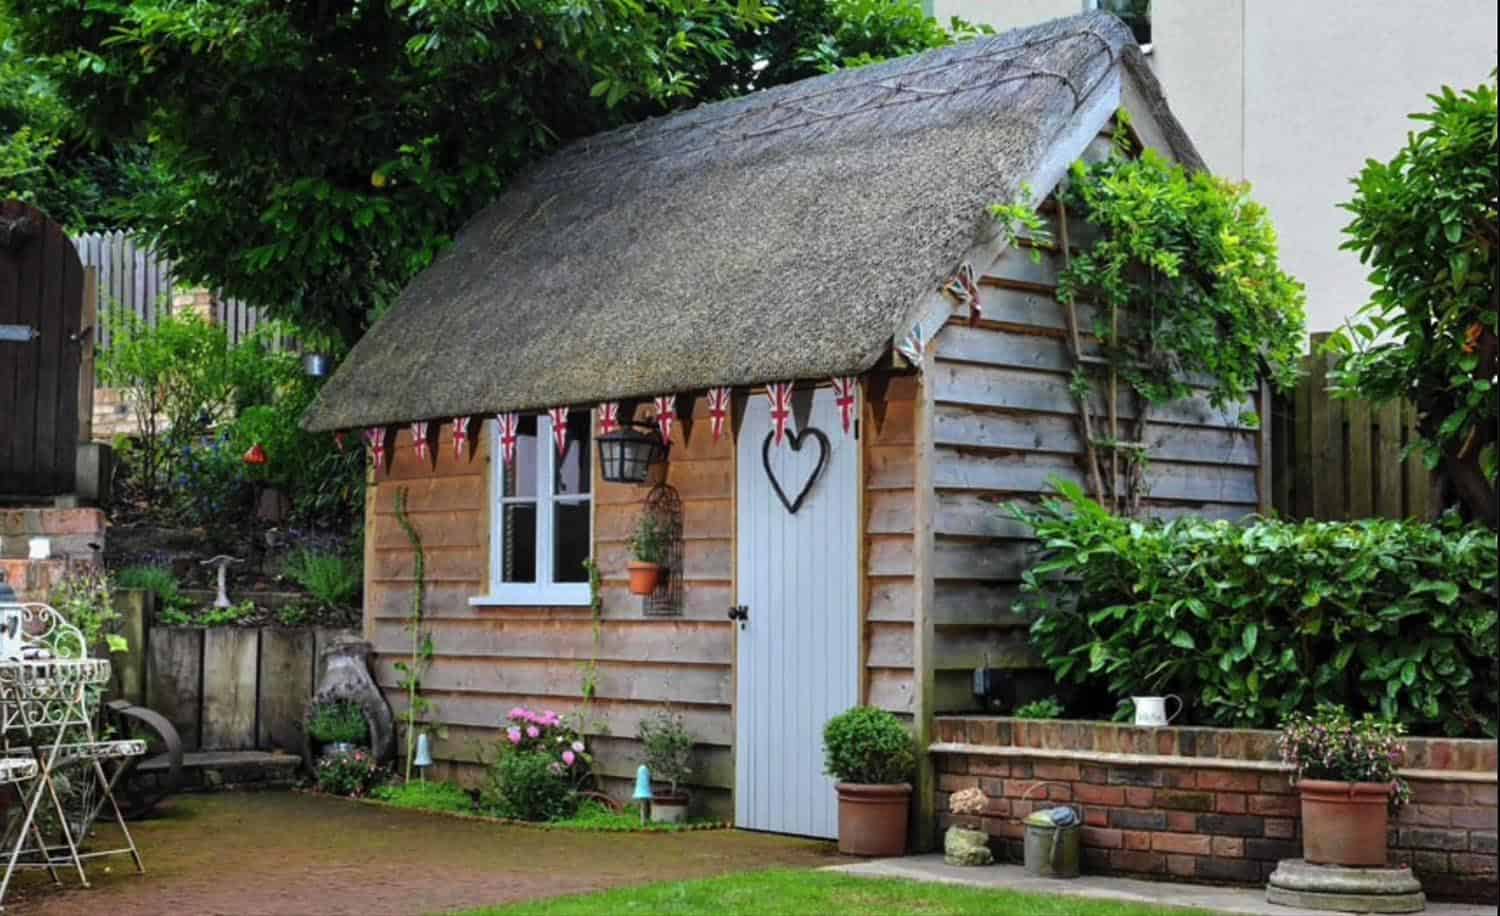 amazing-backyard-garden-shed-ideas